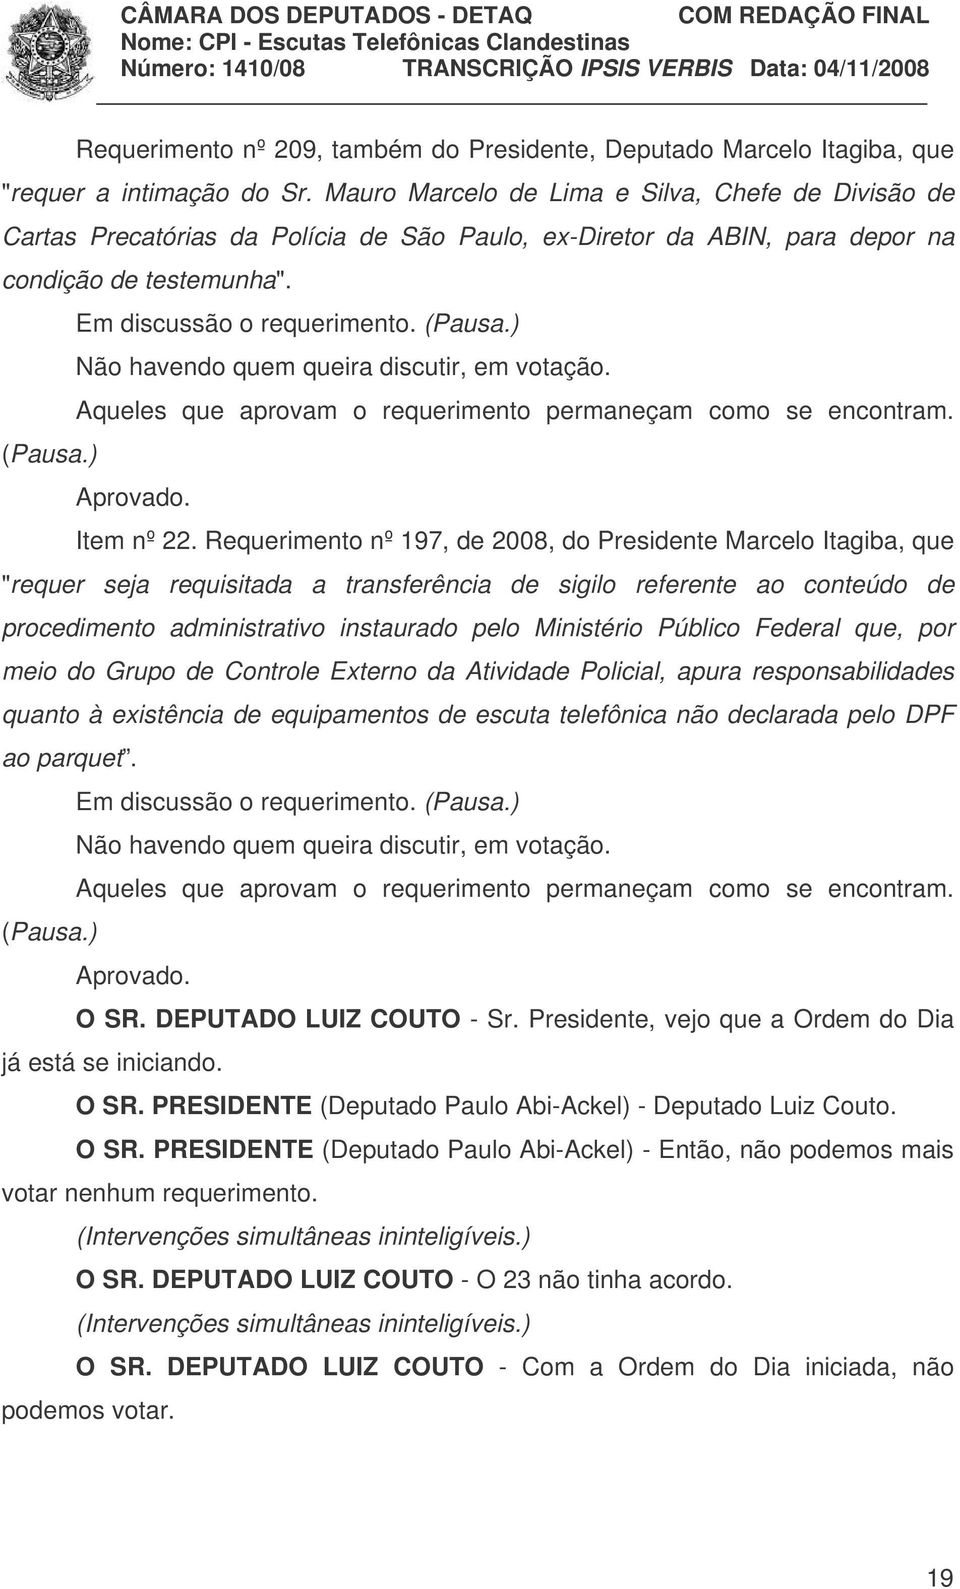 Requerimento nº 197, de 2008, do Presidente Marcelo Itagiba, que "requer seja requisitada a transferência de sigilo referente ao conteúdo de procedimento administrativo instaurado pelo Ministério